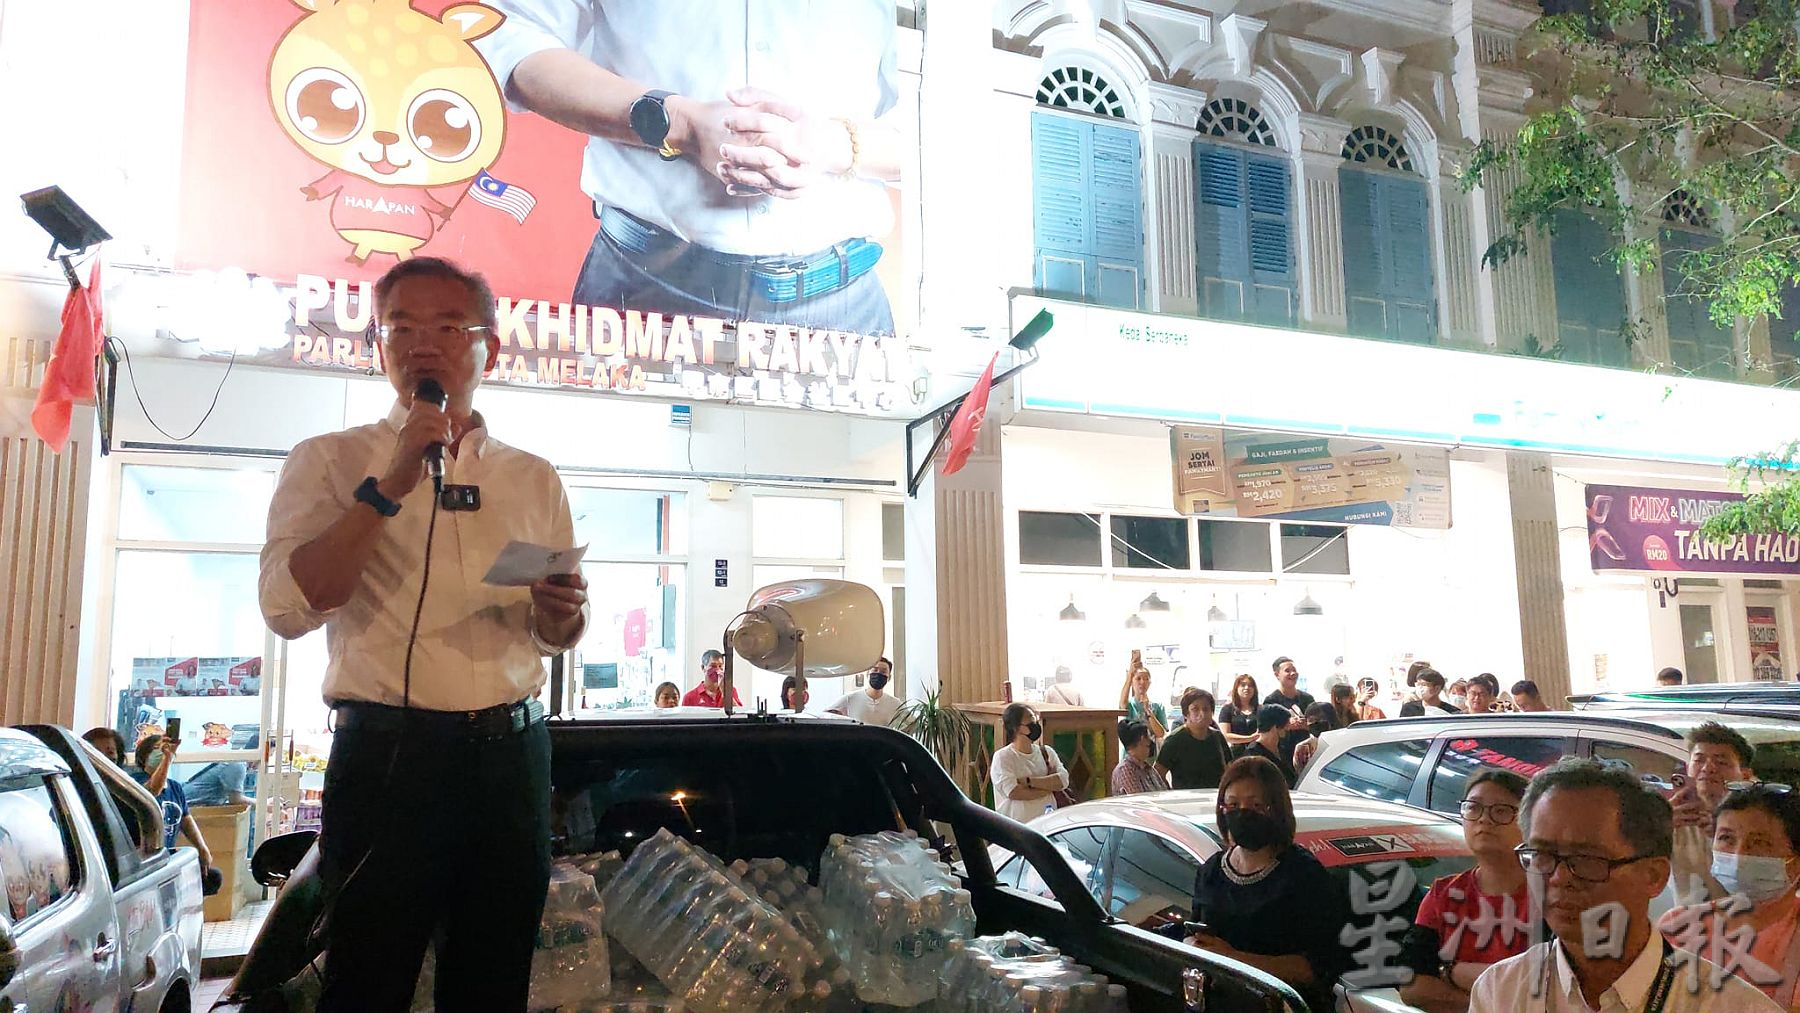 （古城第三版副文）马六甲市区国席希盟胜利，支持者燃放烟花庆祝